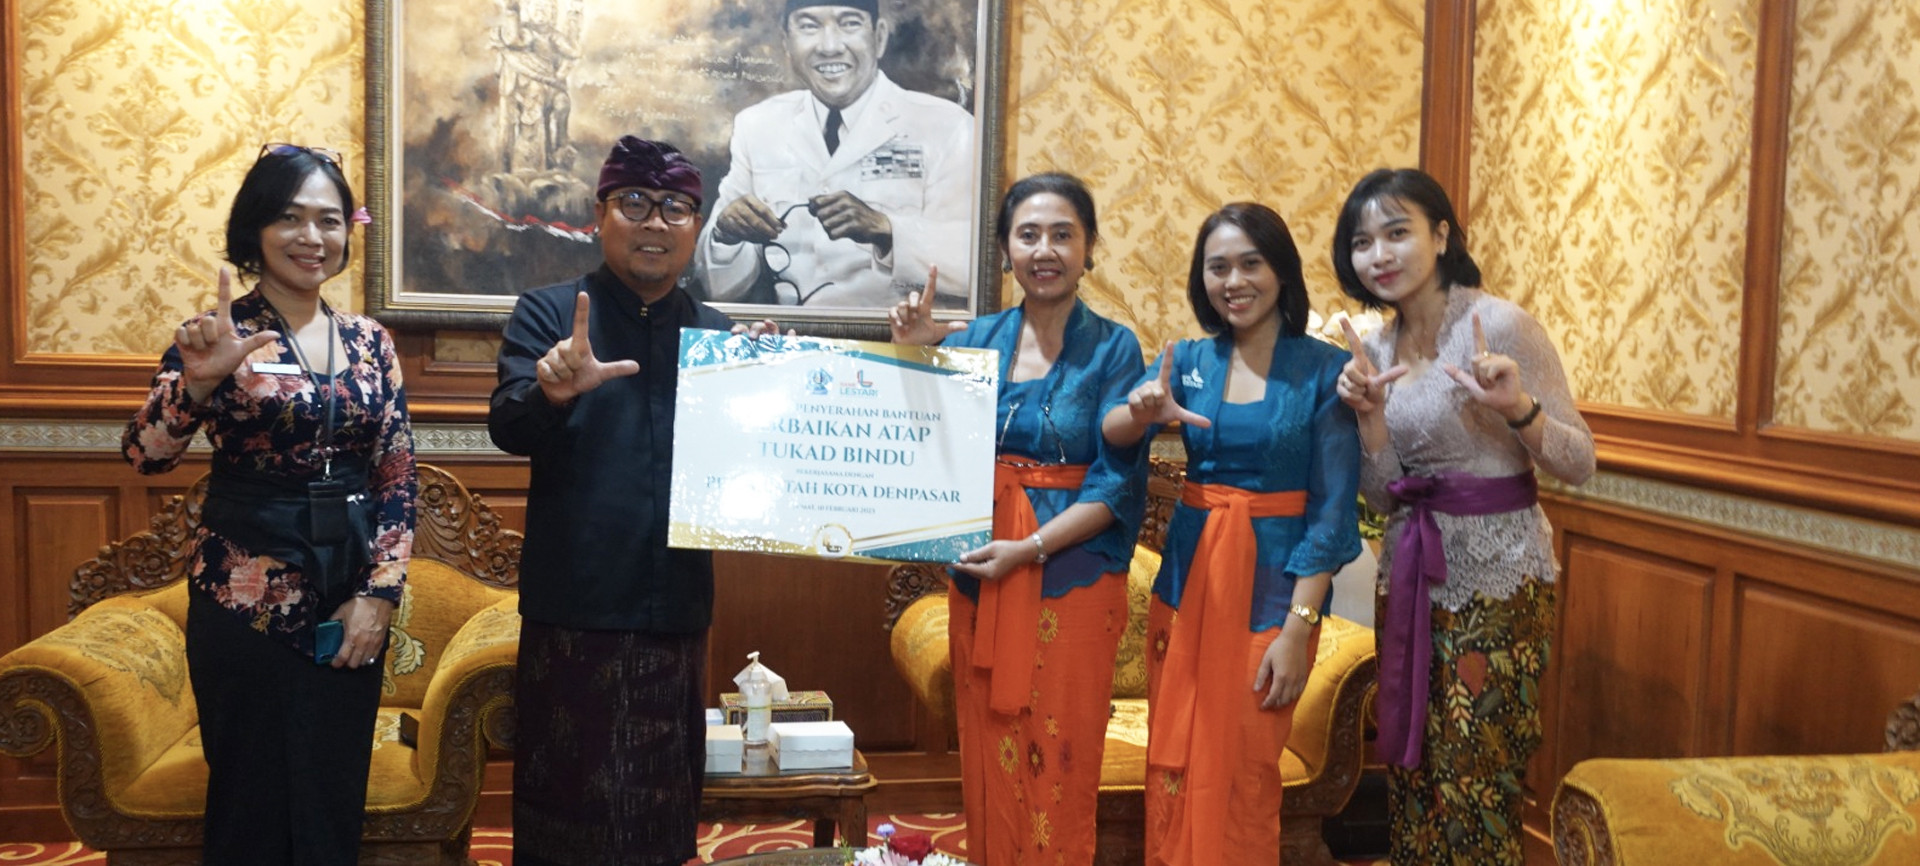 Bank Lestari Bali (BPR) bersama Pemerintah Kota Denpasar Menginisiasi Perbaikan Atap Tukad Bindu